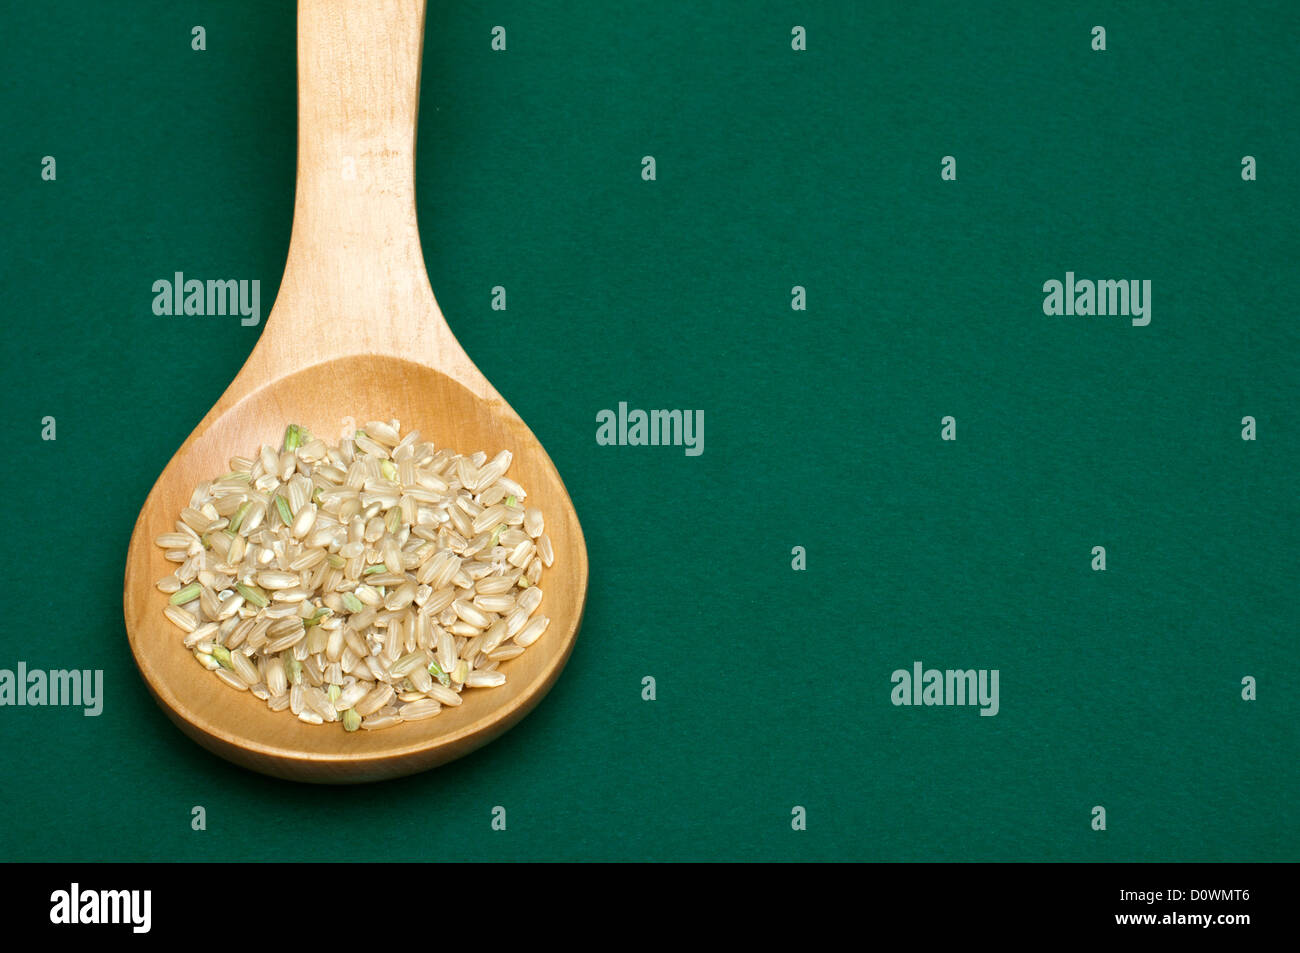 Partie intégrante du riz dans la cuillère en bois sur fond vert. Spice de copie Banque D'Images